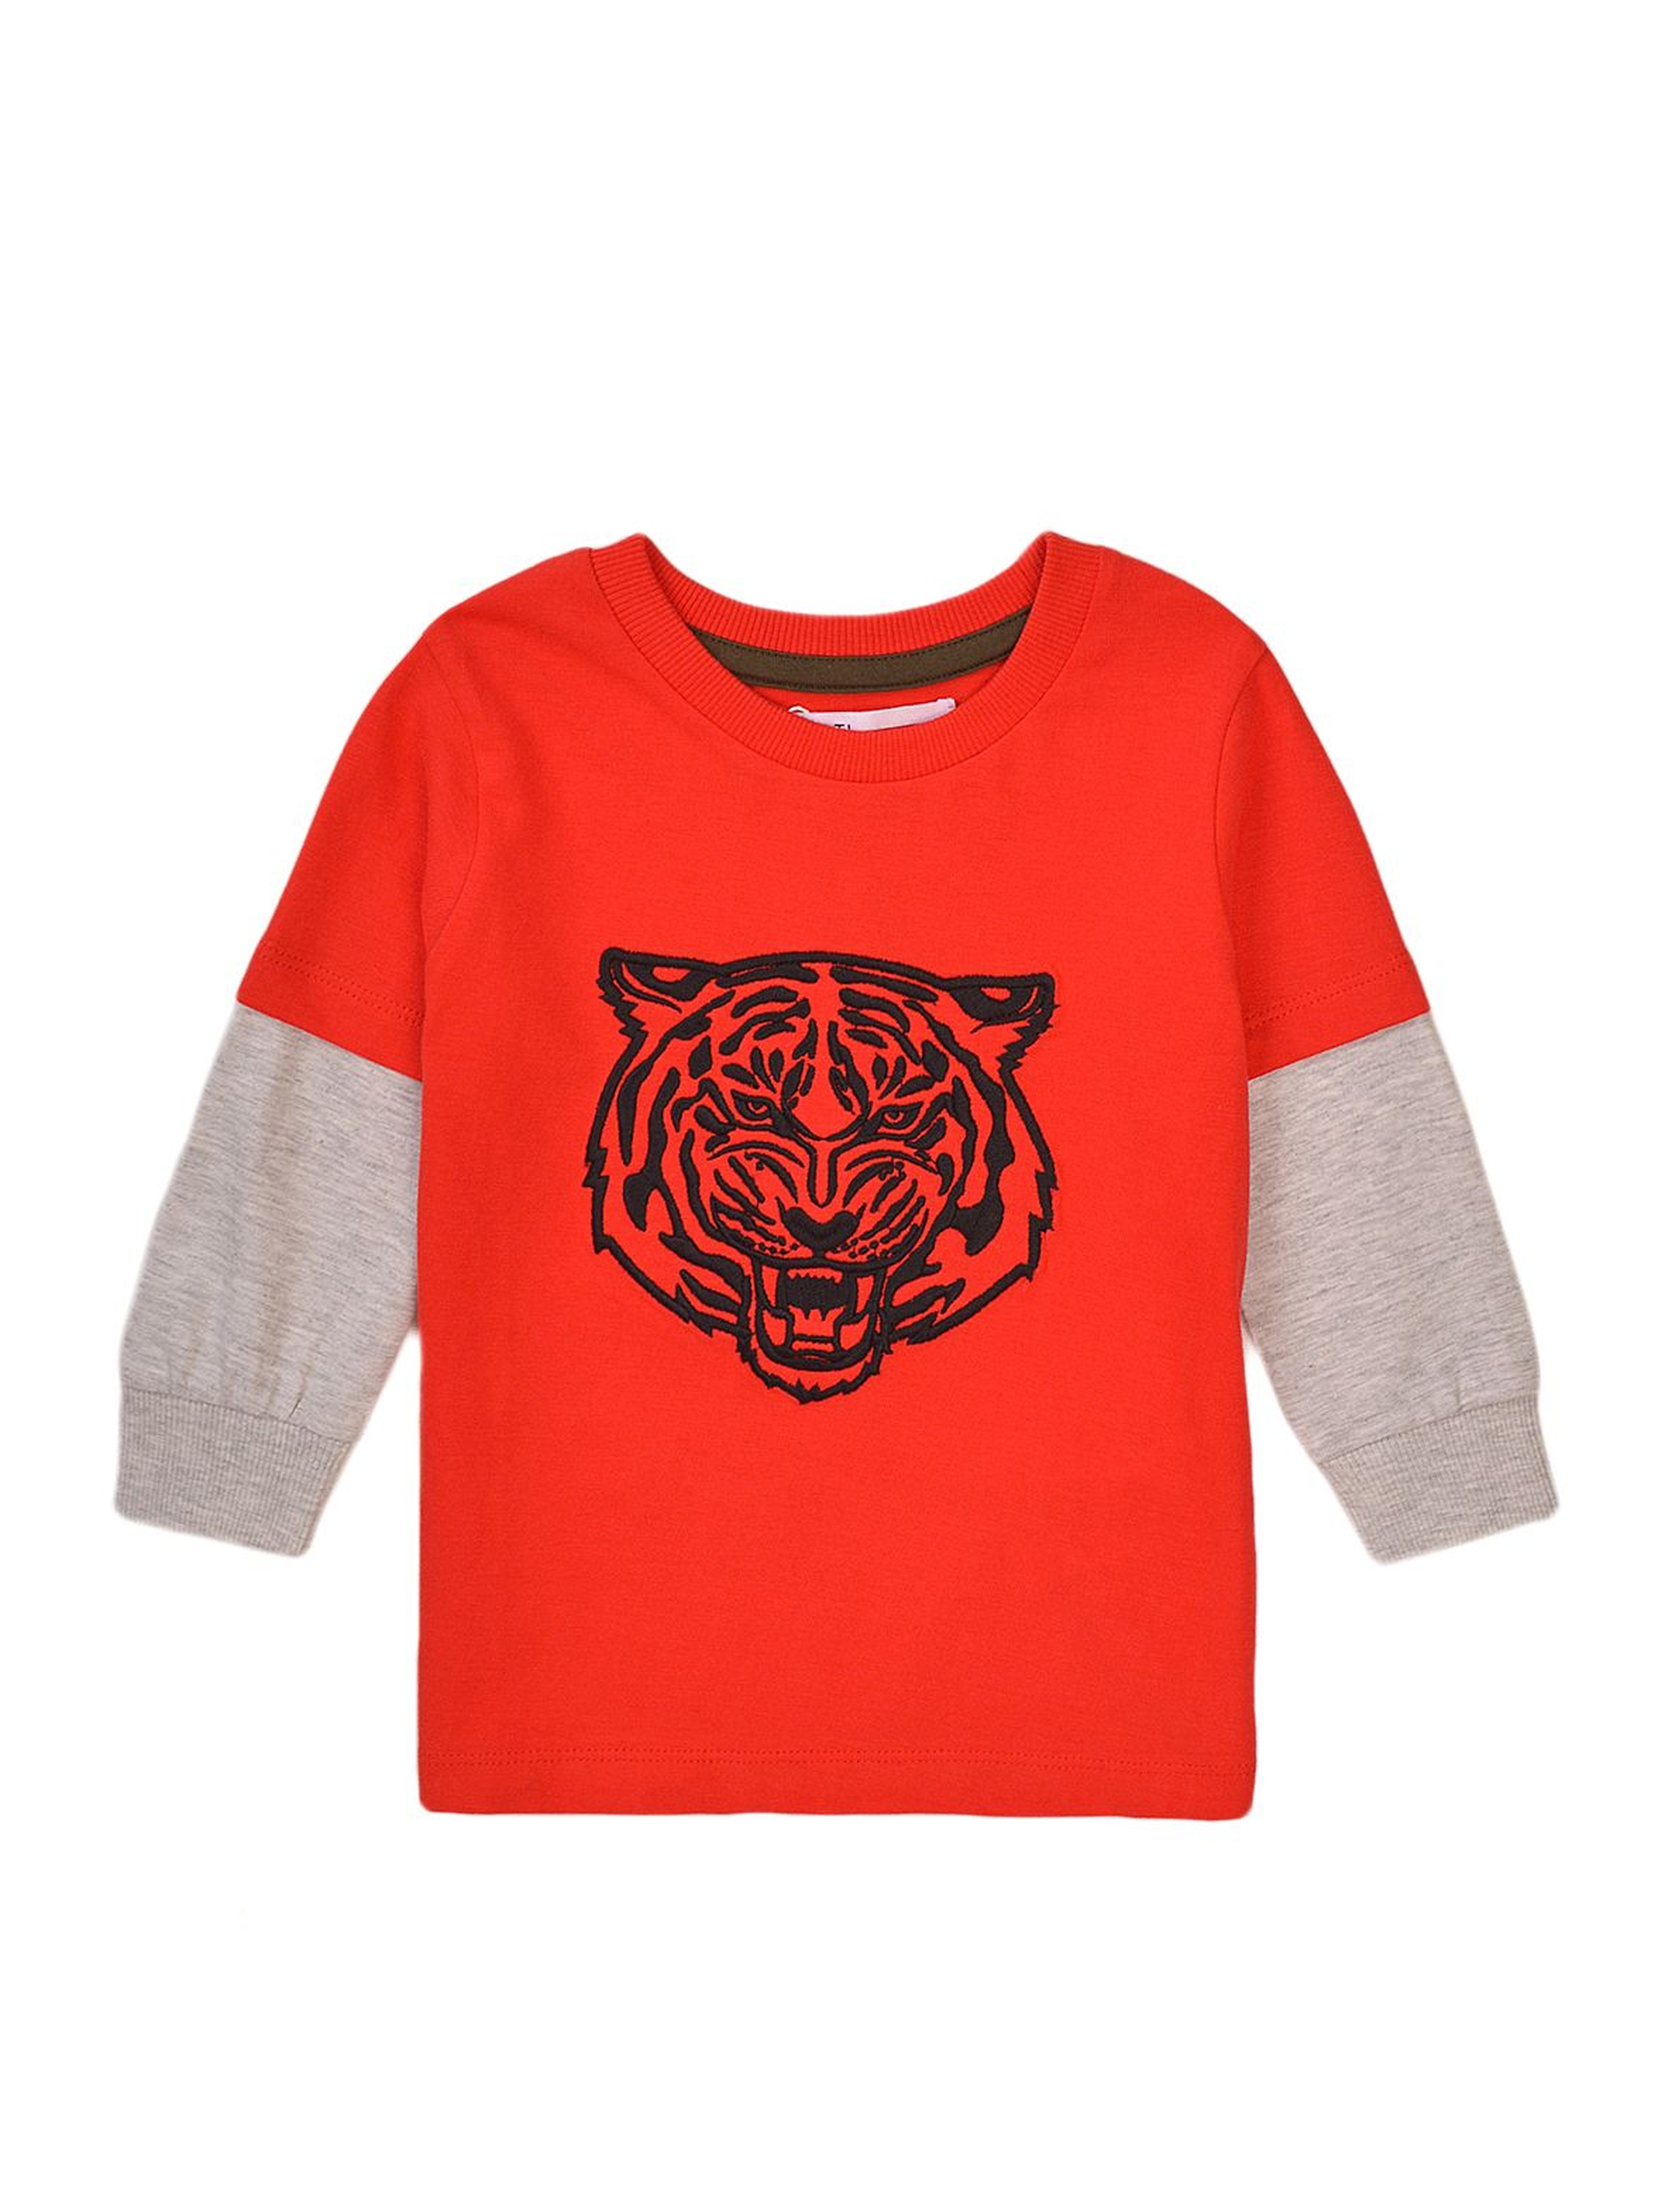 Bluzka chłopięca bawełniana z tygrysem